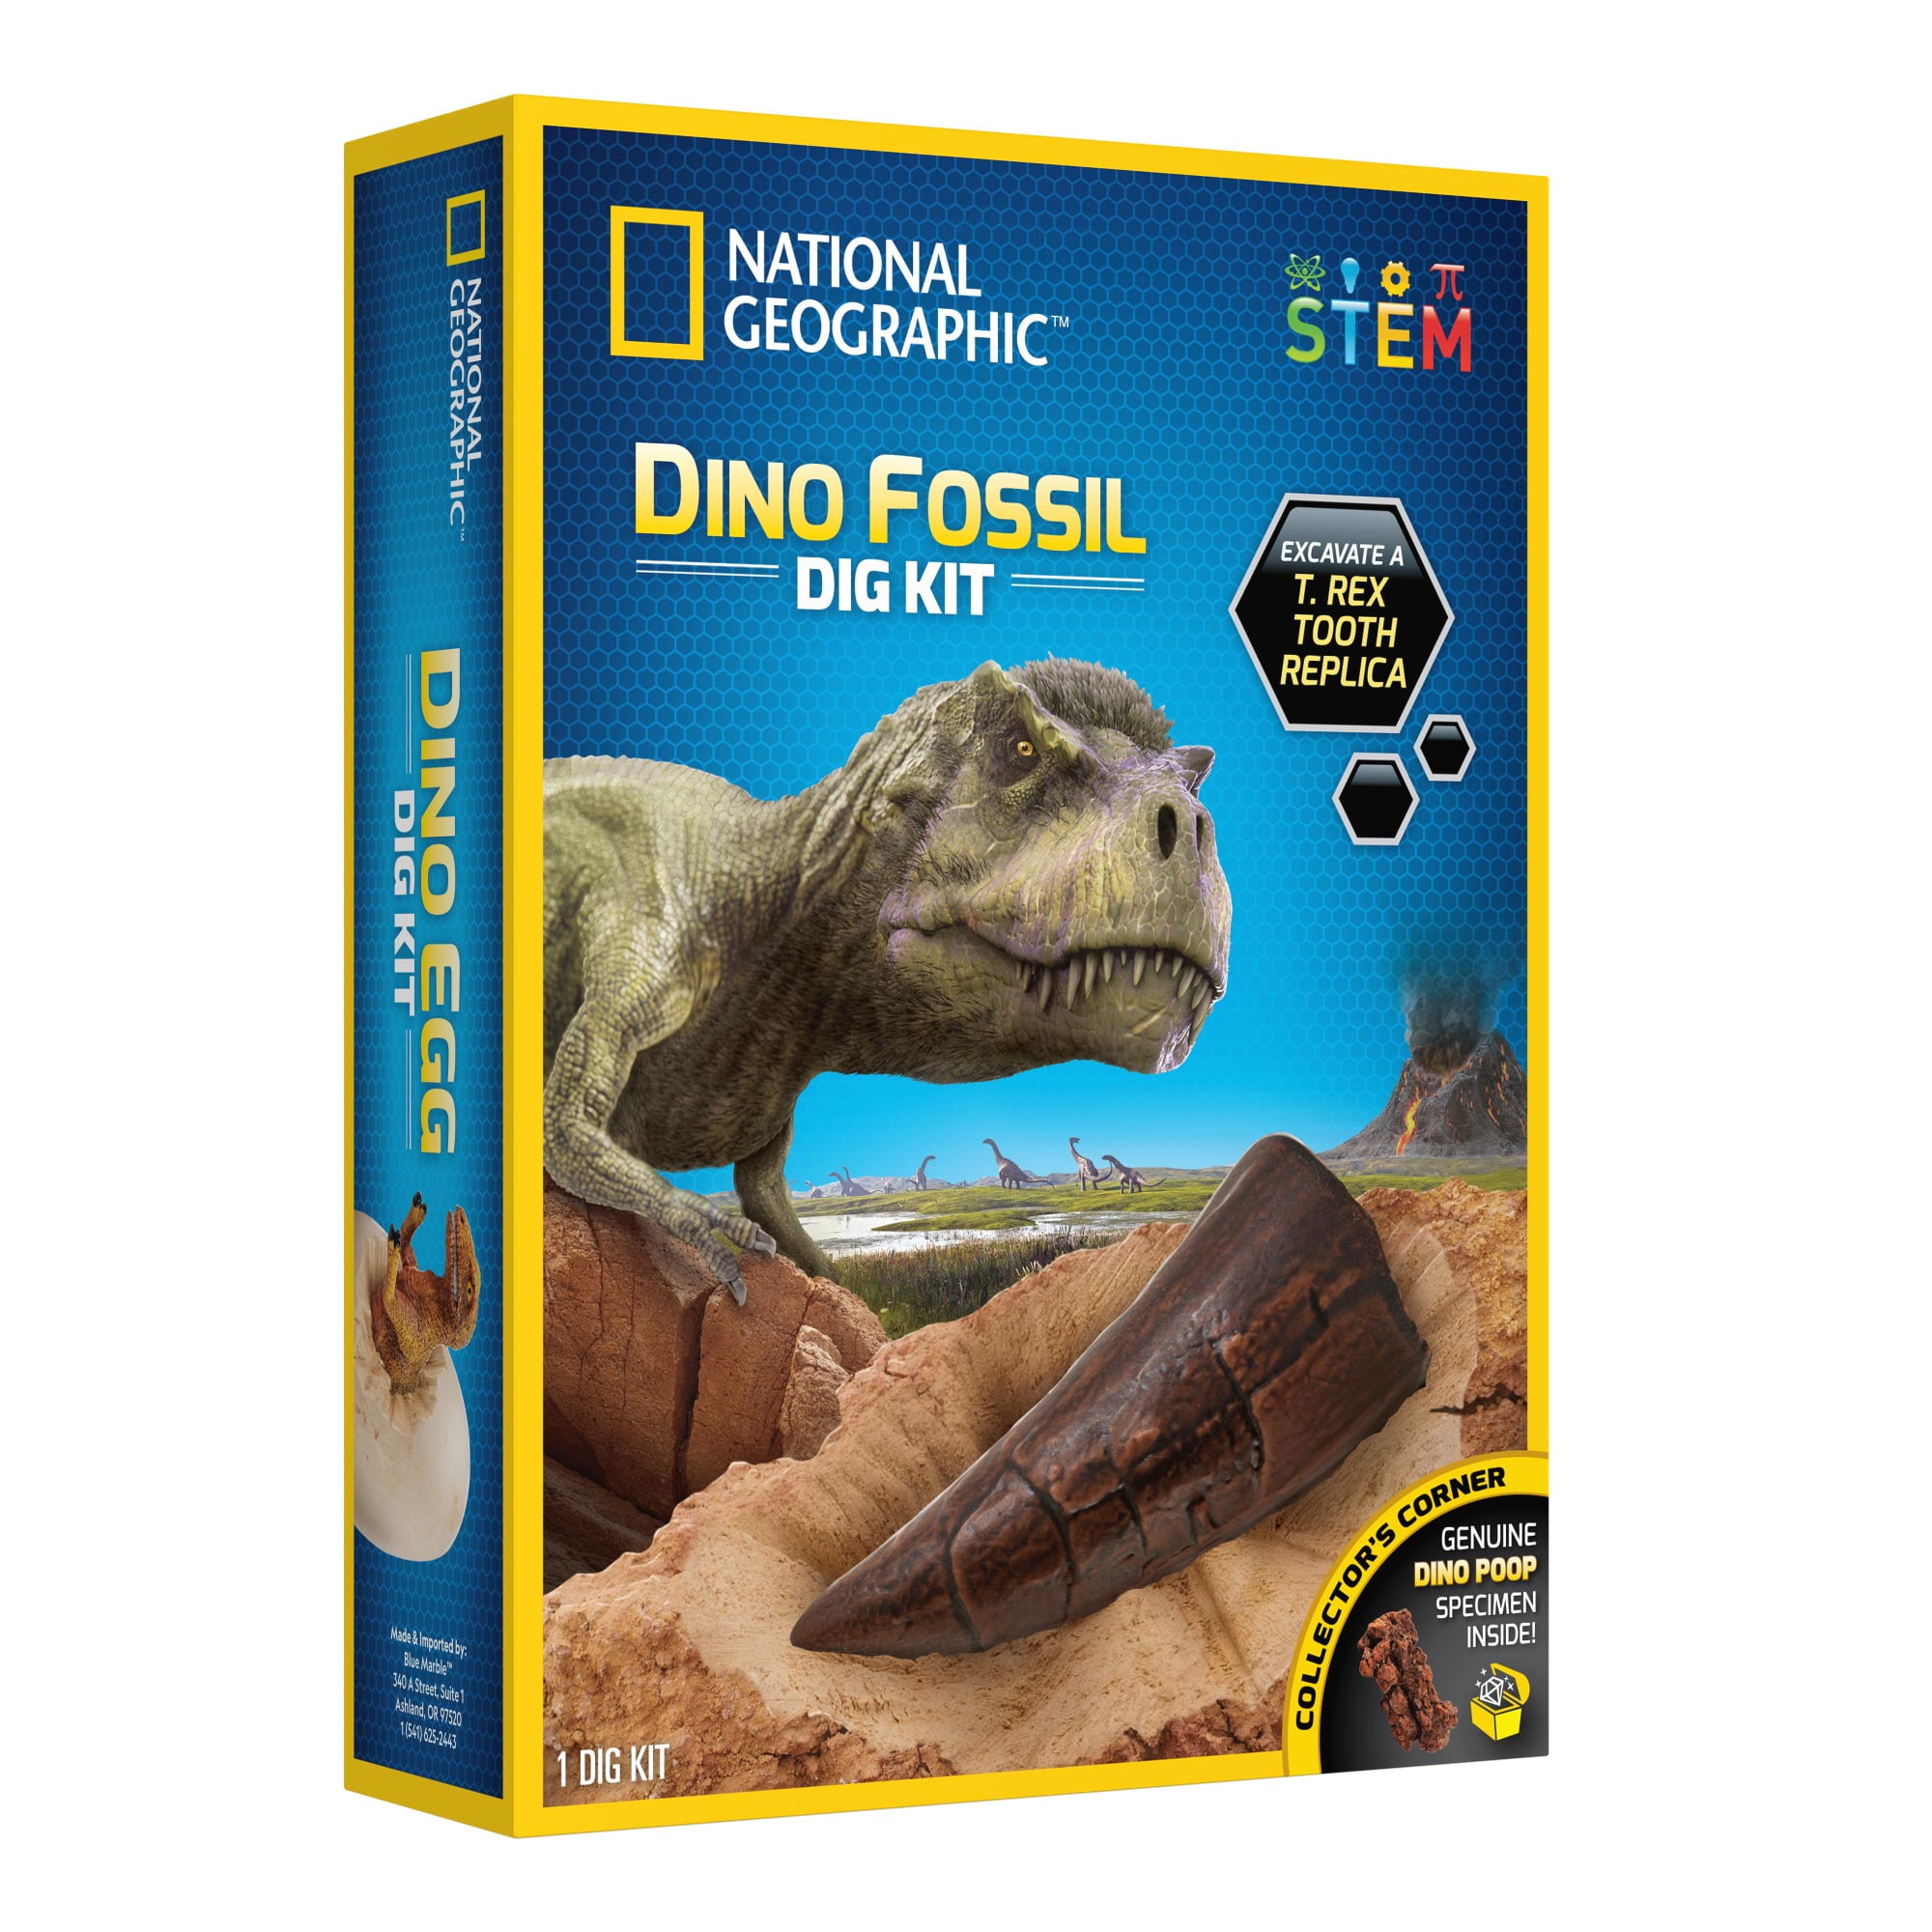 MY DINOSAURS Jurassic Dinosaur Park Dinosaur Teeth Model Replica